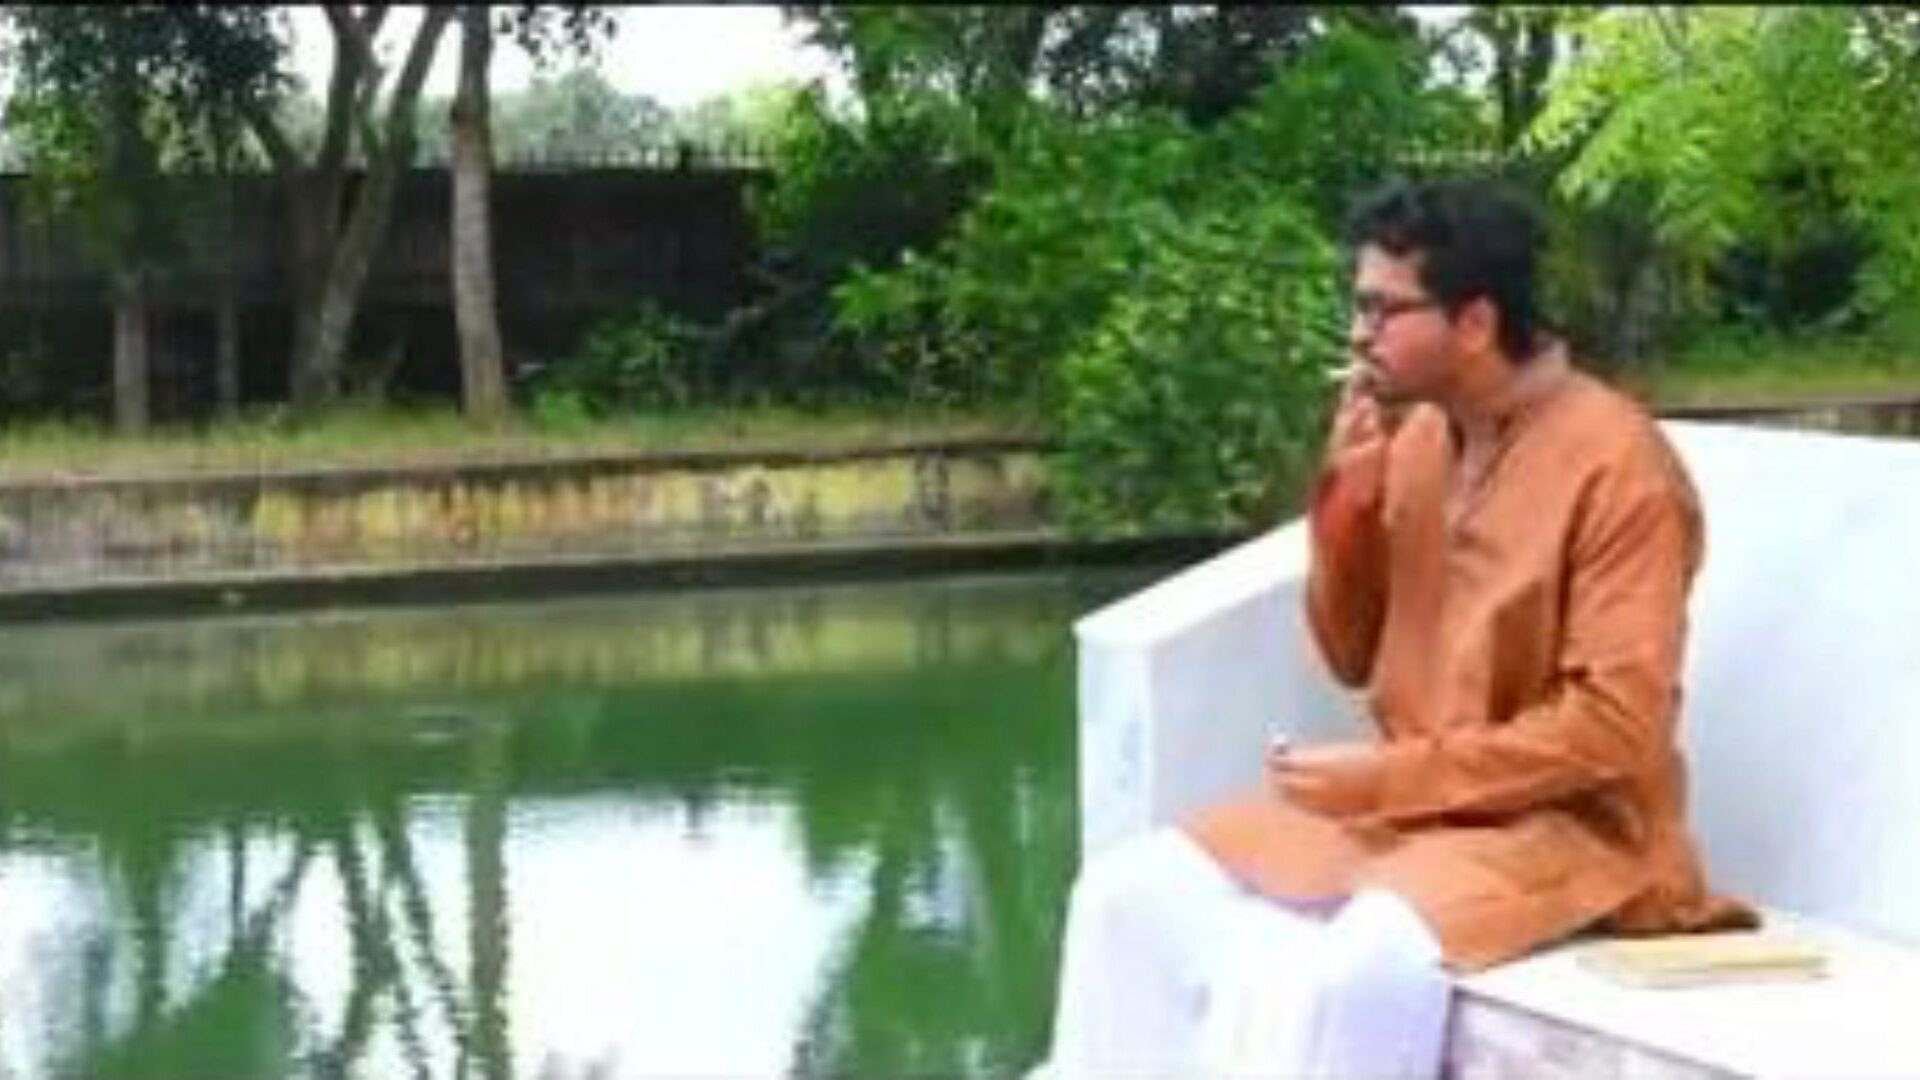 aatmkatha: gratis indisk & kyssande porrfilm 9b - xhamster titta på aatmkatha röret fucky-fucky avsnitt för gratis för alla på xhamster, med den enastående uppskattningen av asiatiska indiska, kyssar & stora tuttar porrfilmsekvenser